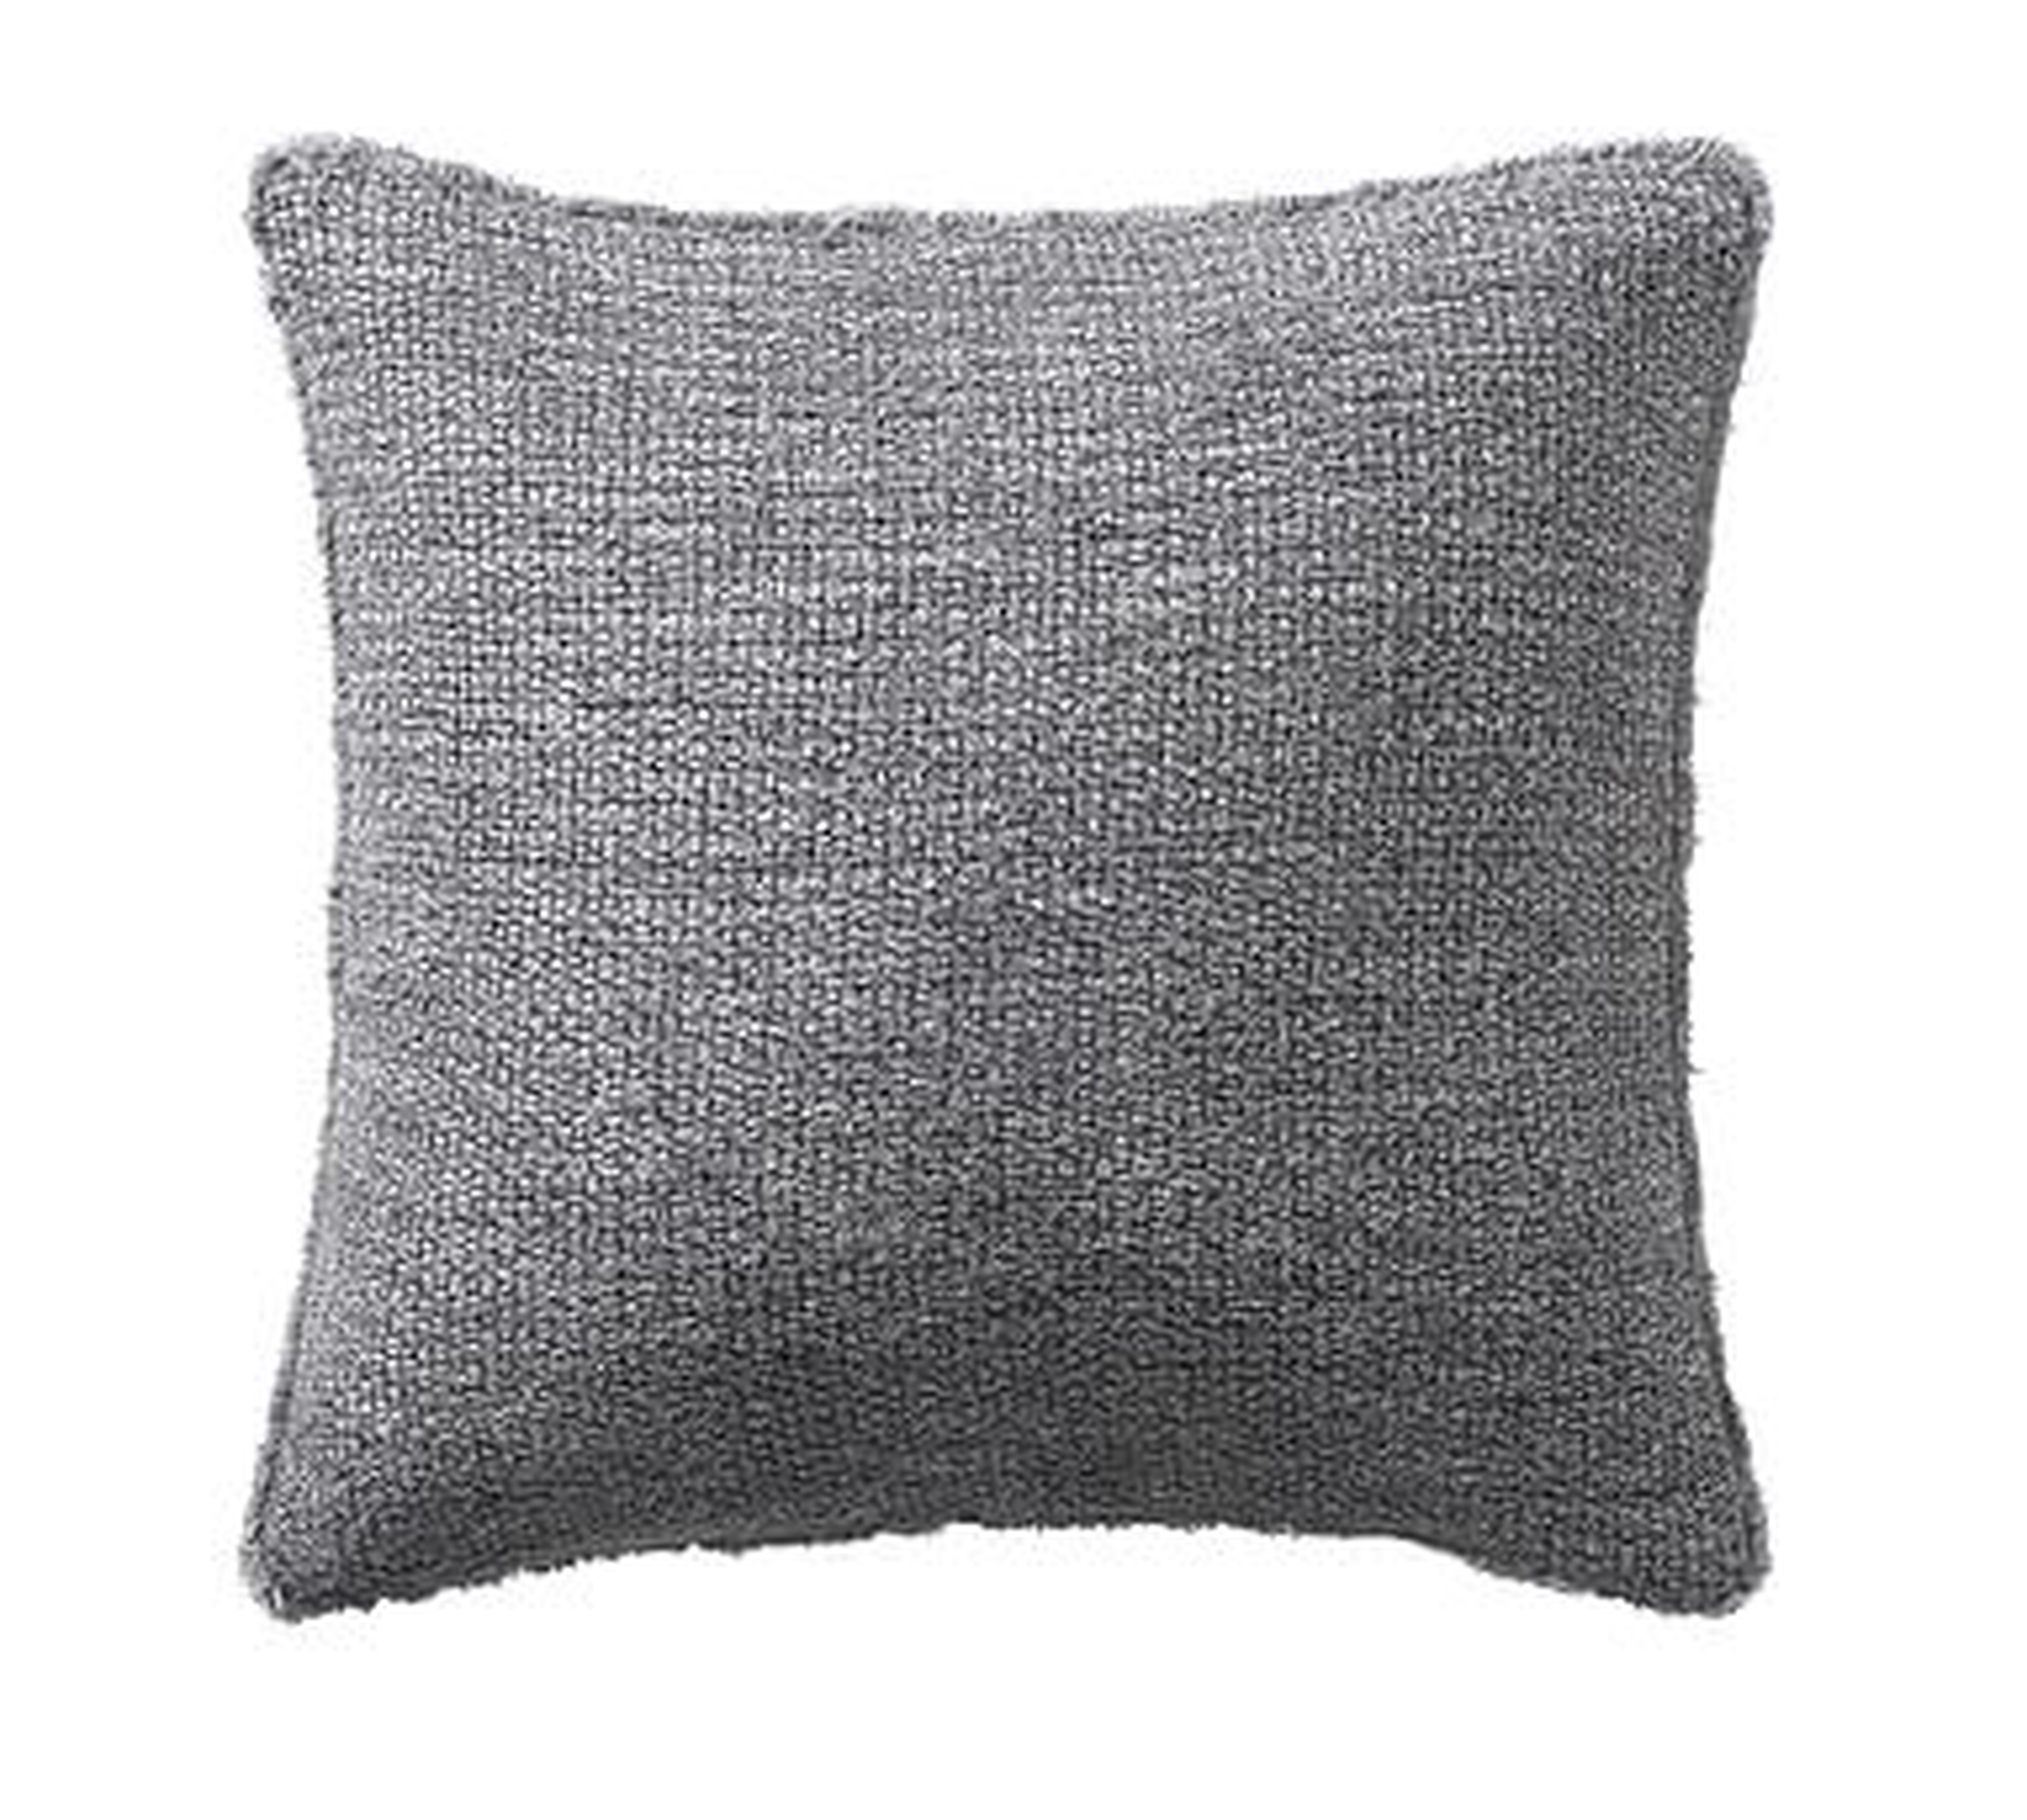 Duskin Textured Pillow, 20", Gray - Pottery Barn